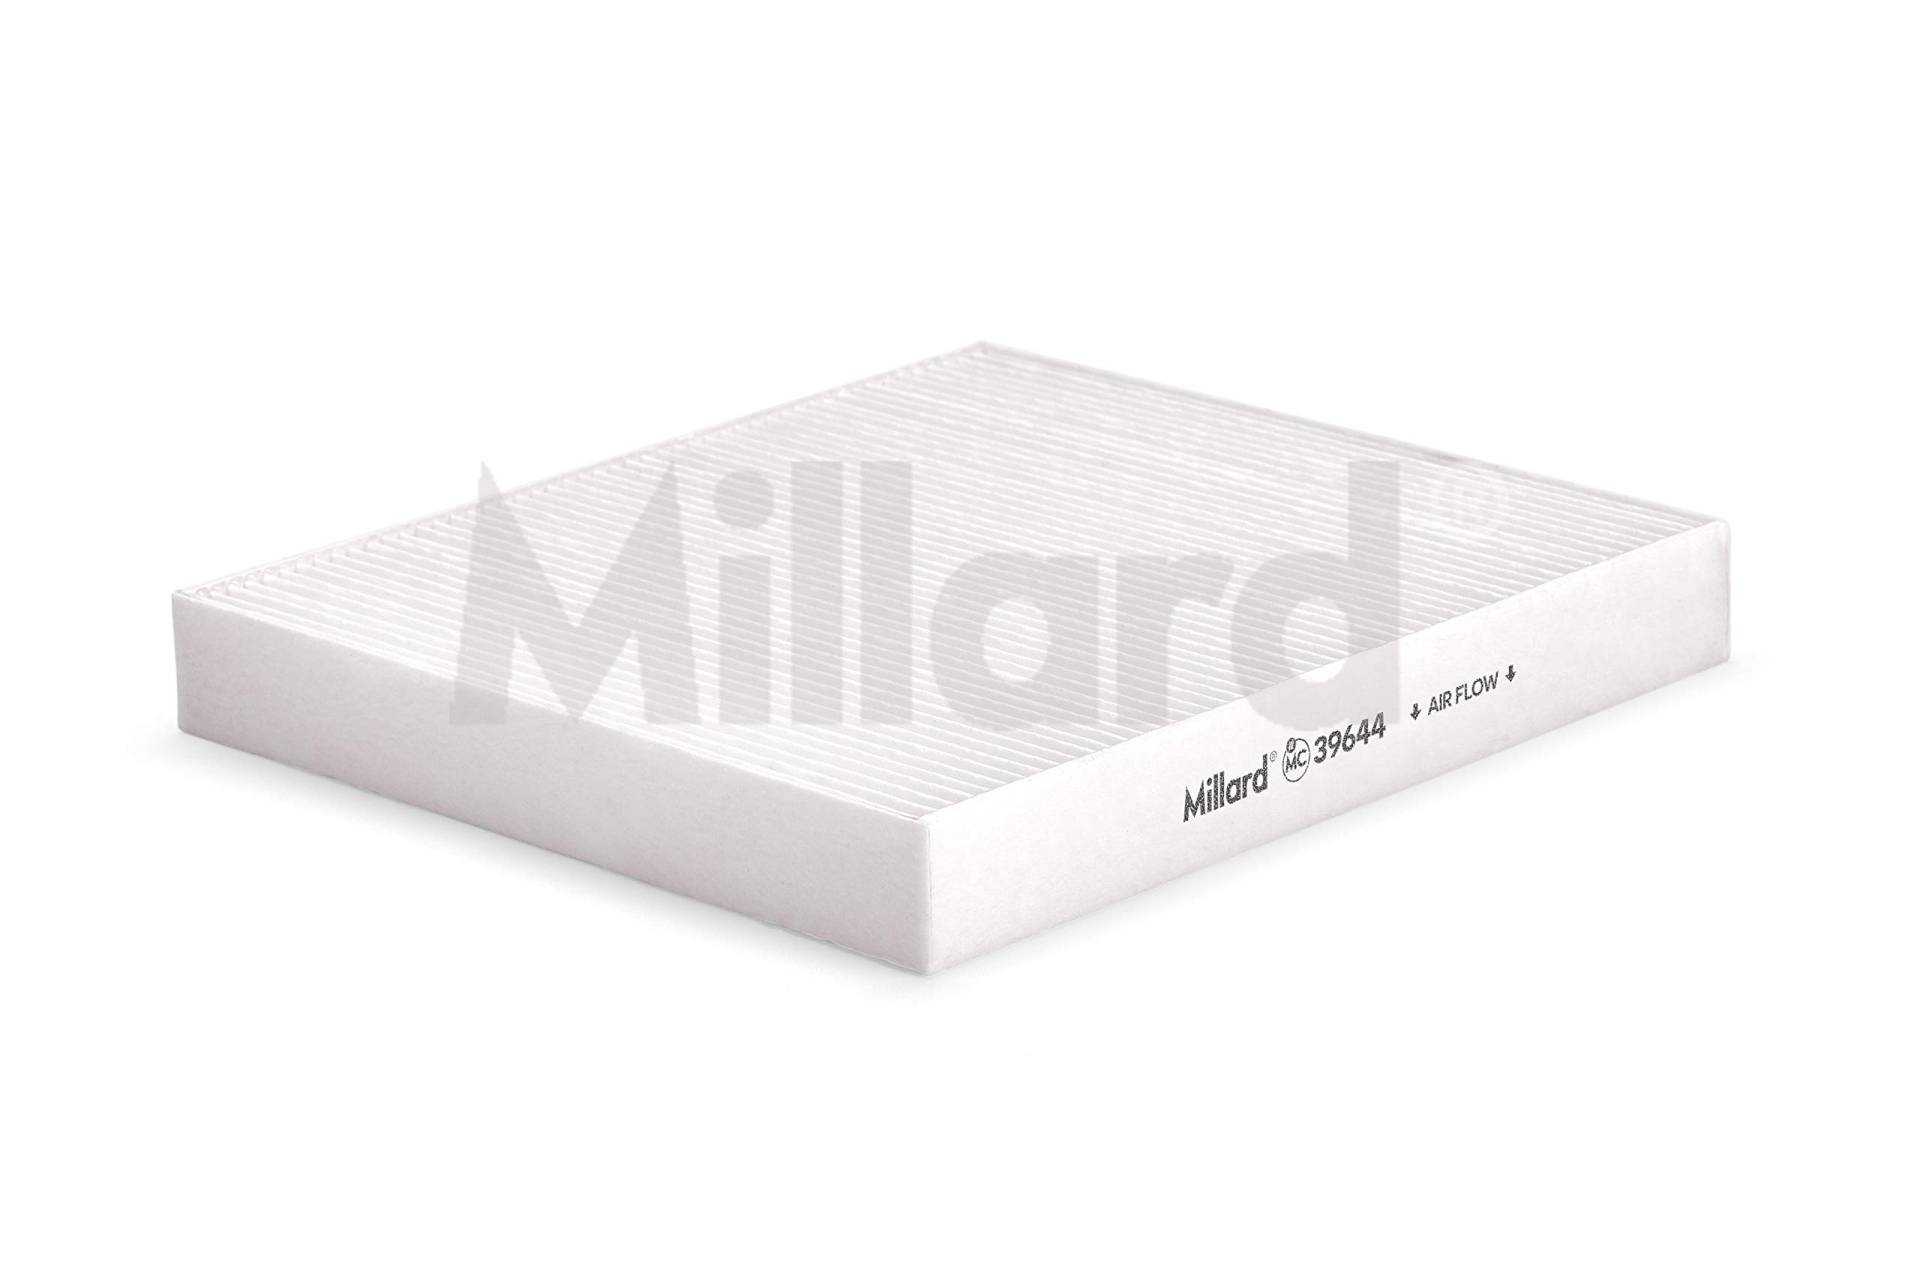 Millard Filters Original Millard Auto Innenraumfilter, 1 Stück. 25.3 x 23.4 x 3.2 cm von Millard Filters